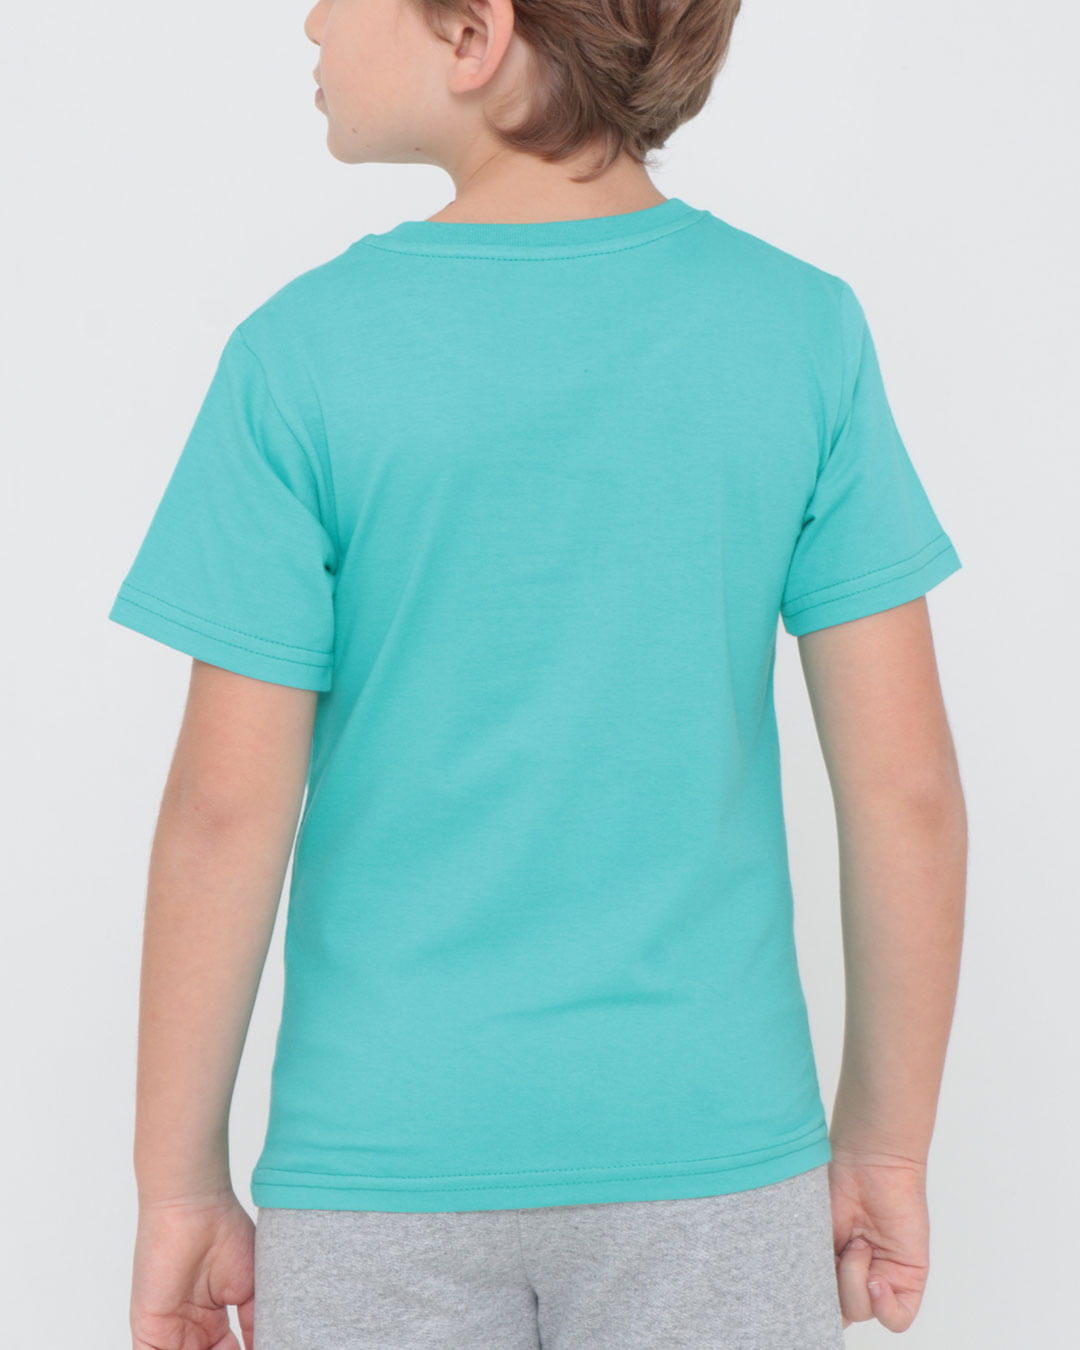 Camiseta-Infantil-Estampa-Praia-Verde-Claro